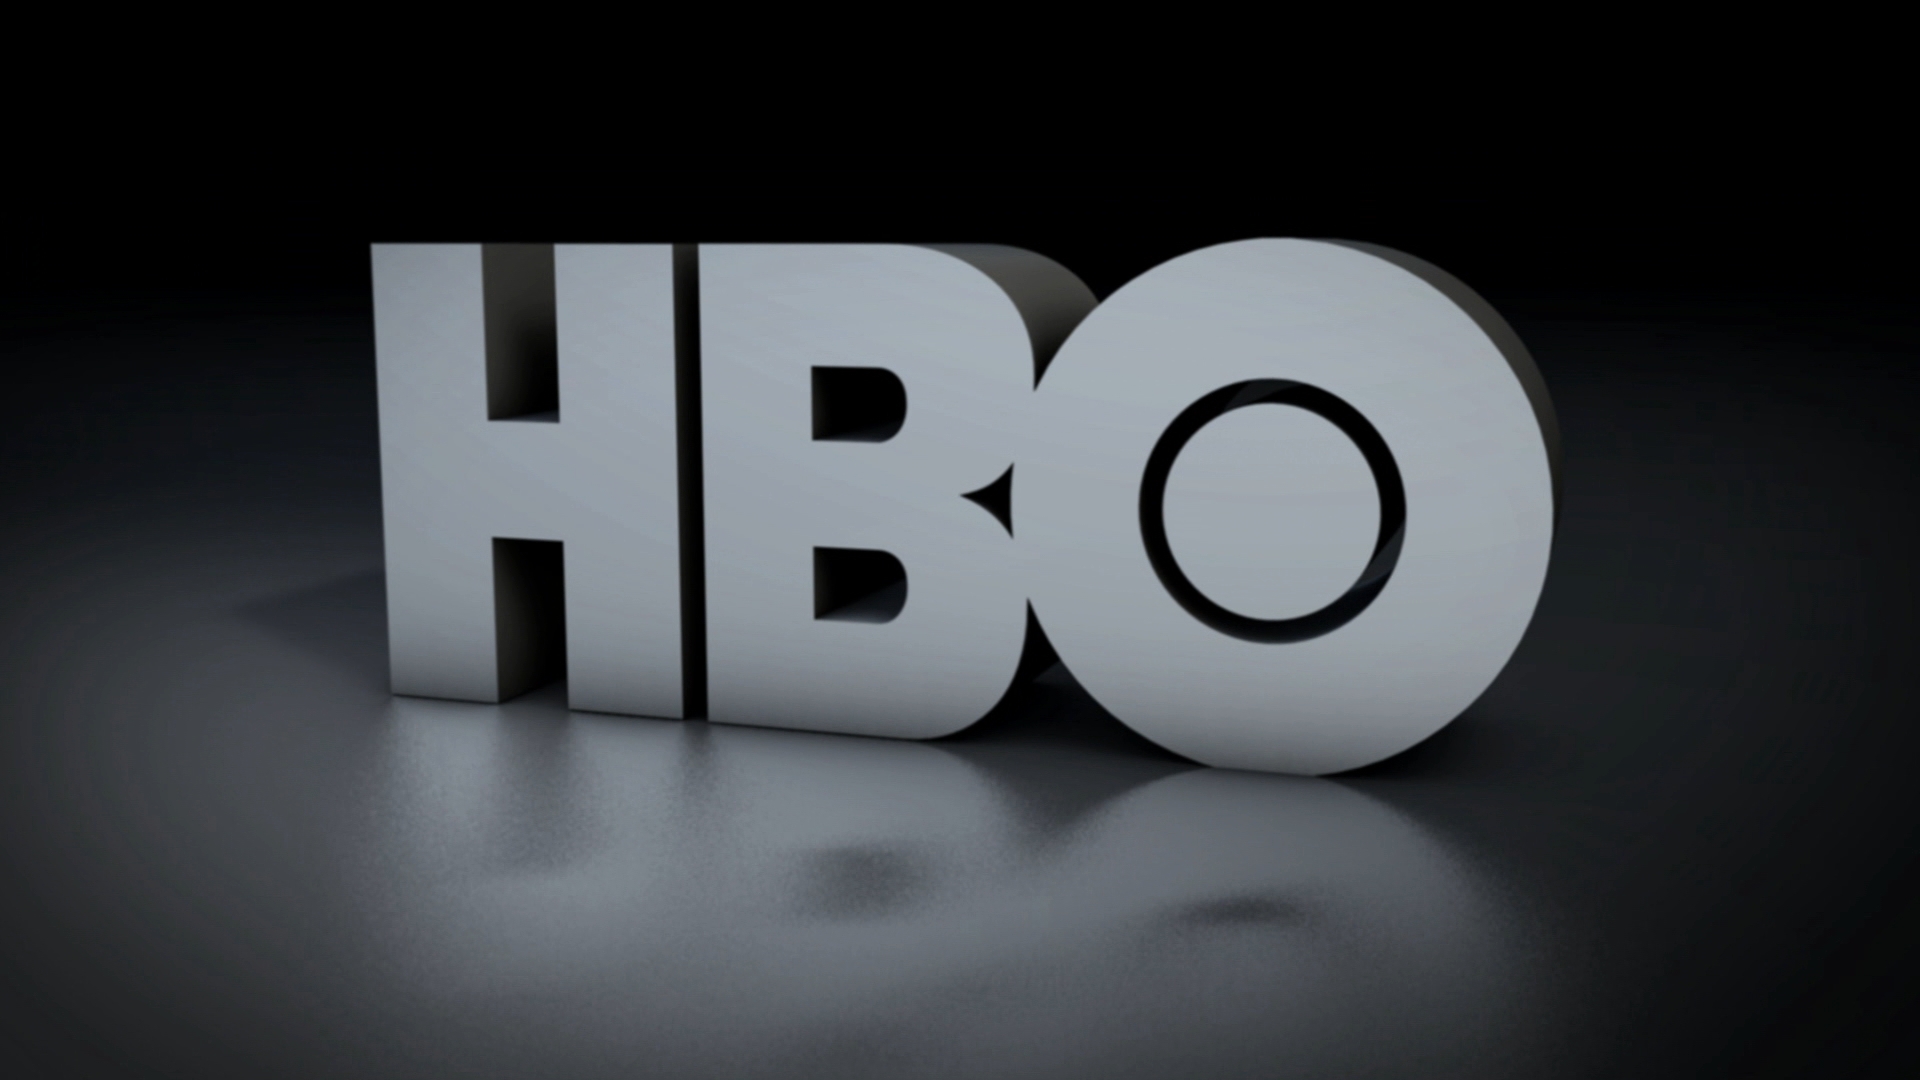 Watch HBO in HD